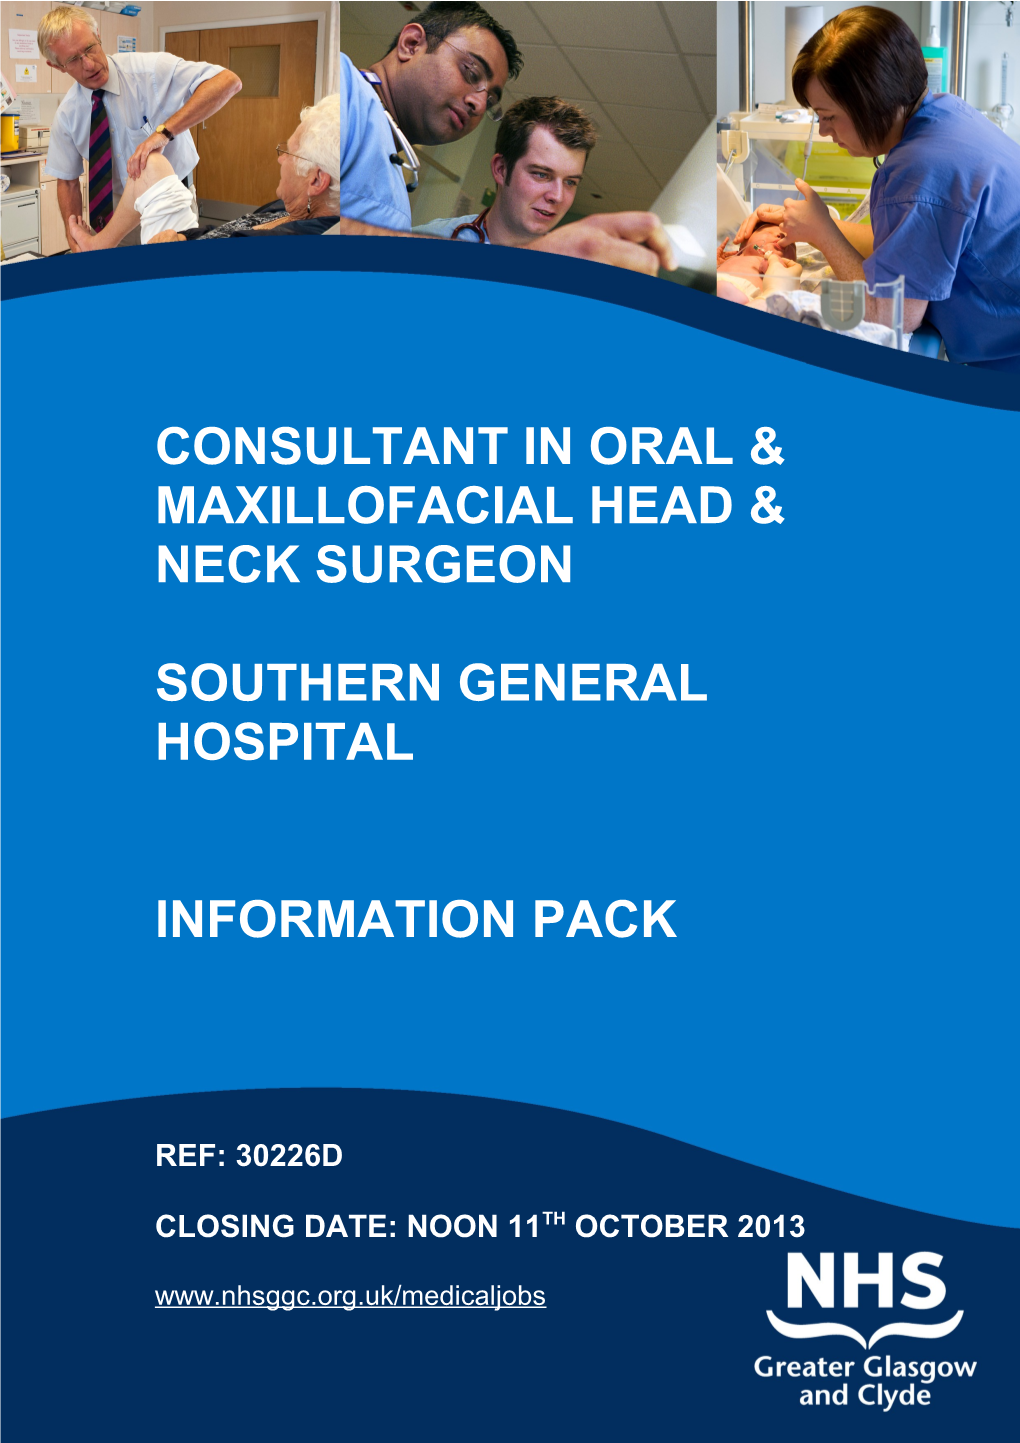 Consultant in Oral & Maxillofacial Head & Neck Surgeon